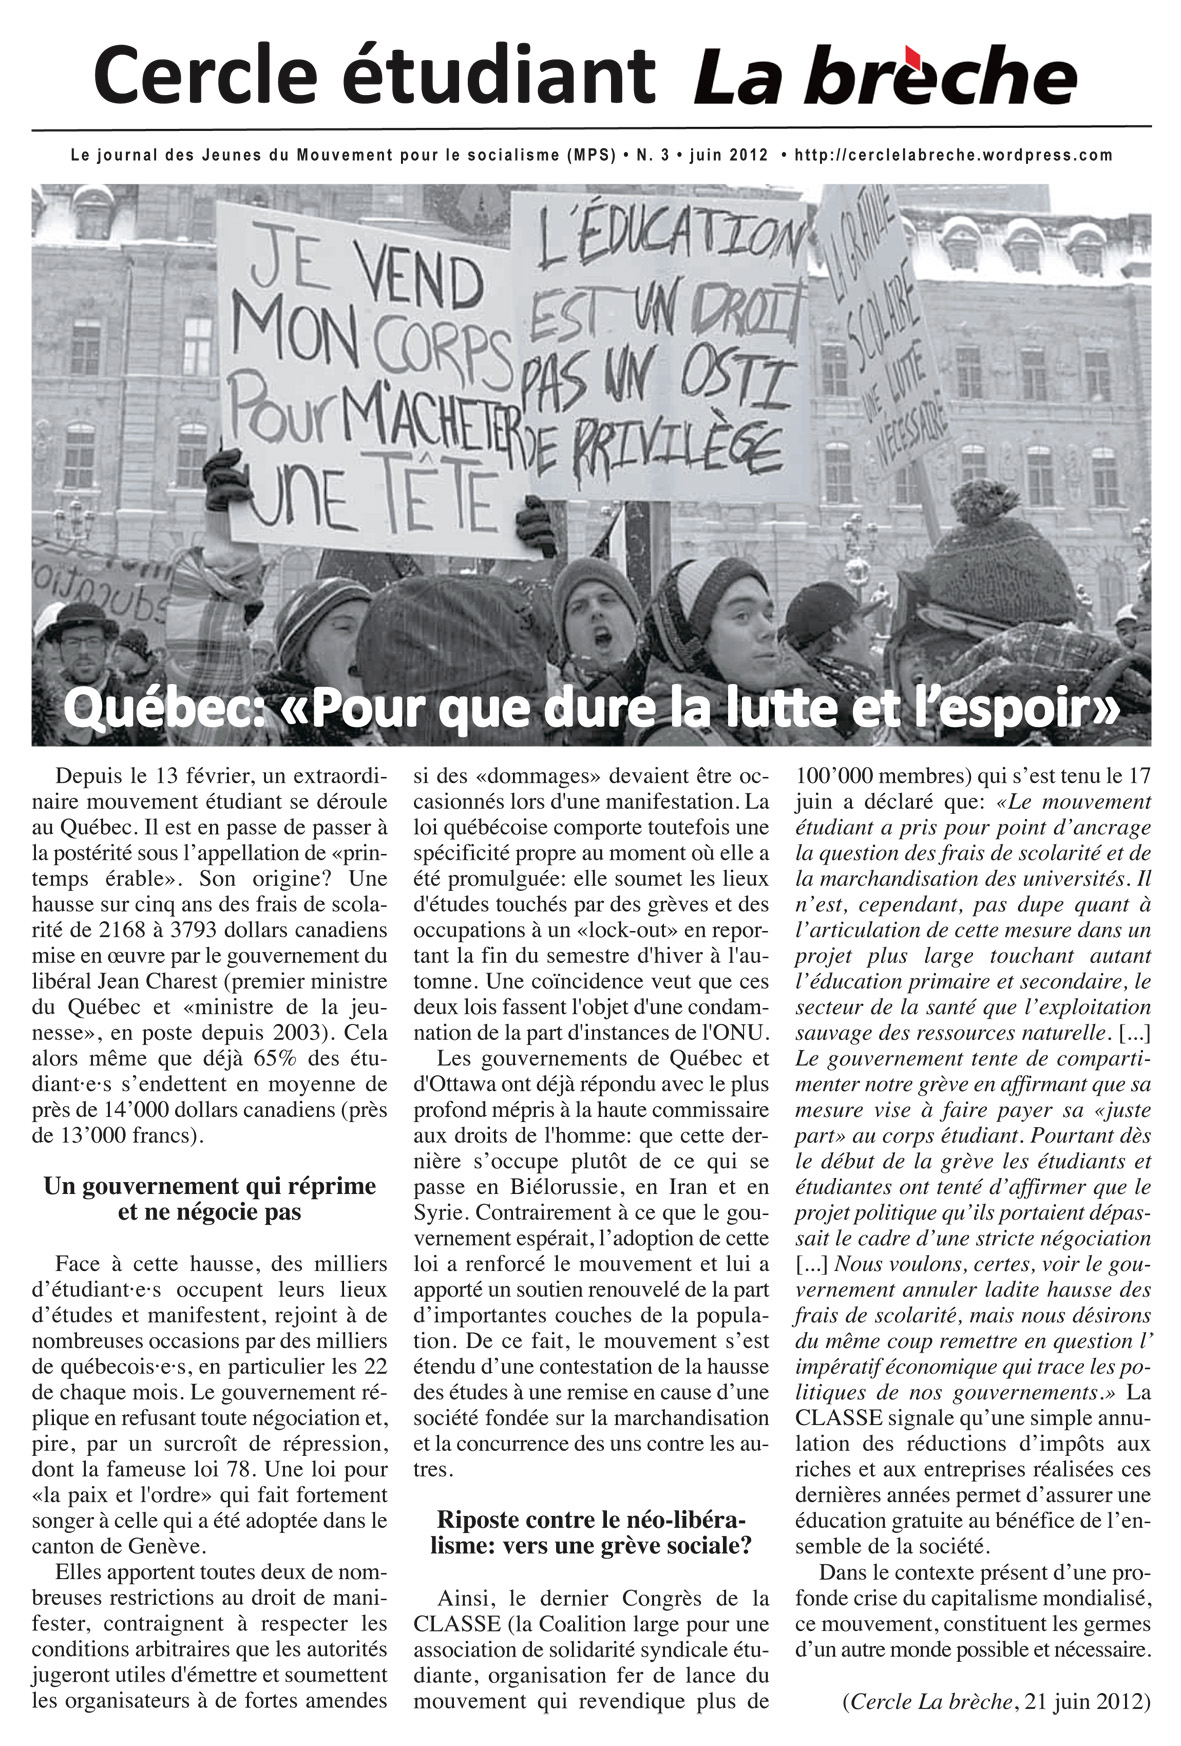 Dimanche 24 juin 2012, 14h, Genève (Pont des Bergues): journée de solidarité avec le mouvement étudiant québécois